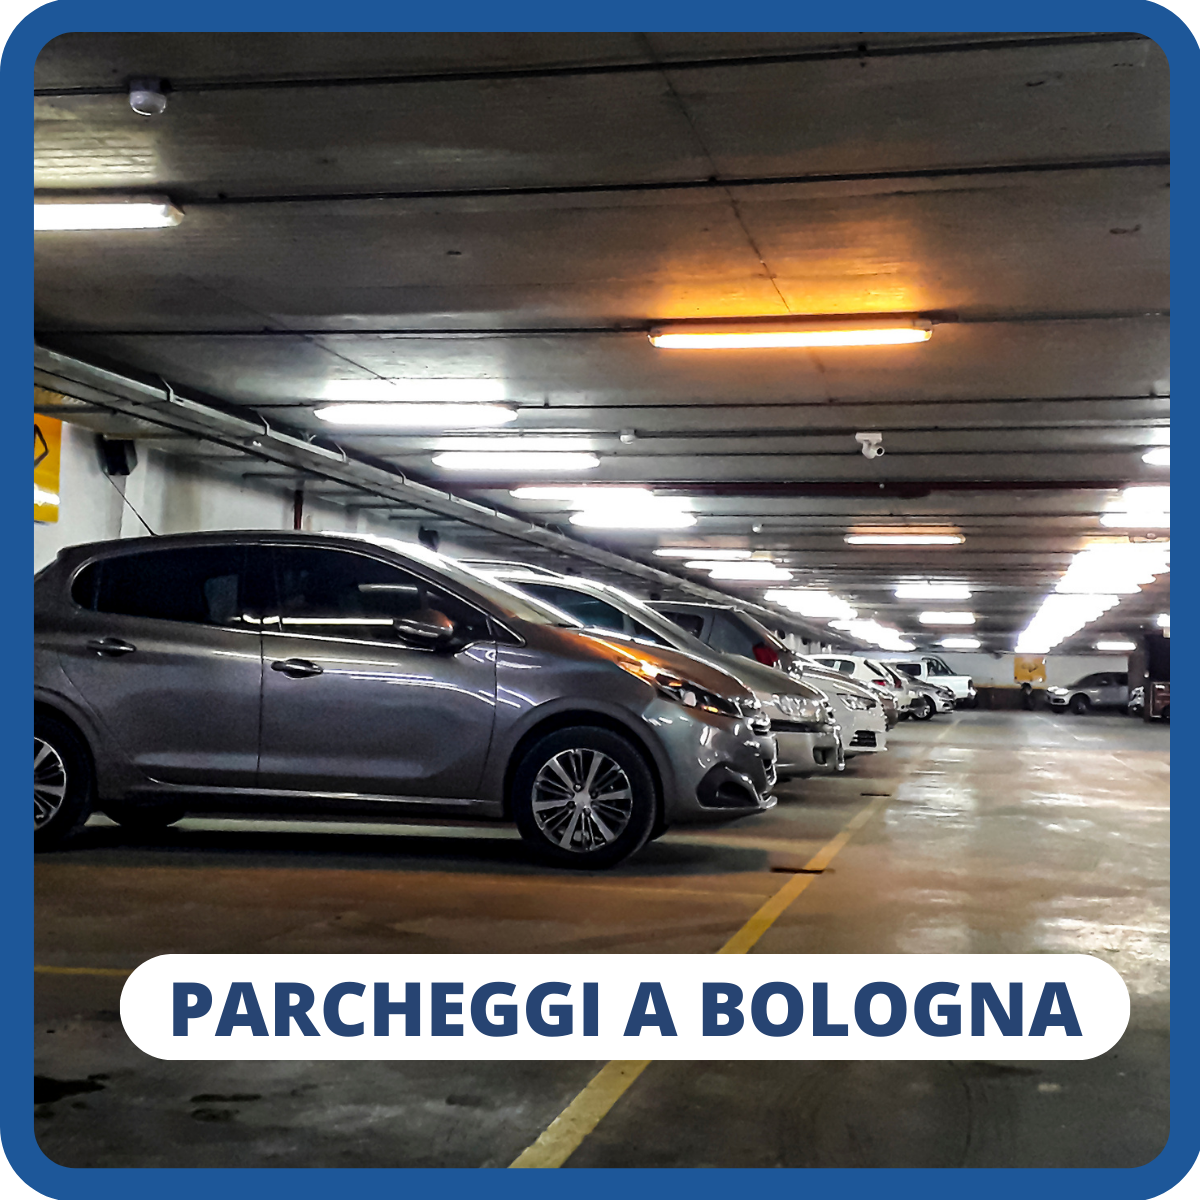 informazioni in tempo reale sui Parcheggi occupati o liberi a Bologna